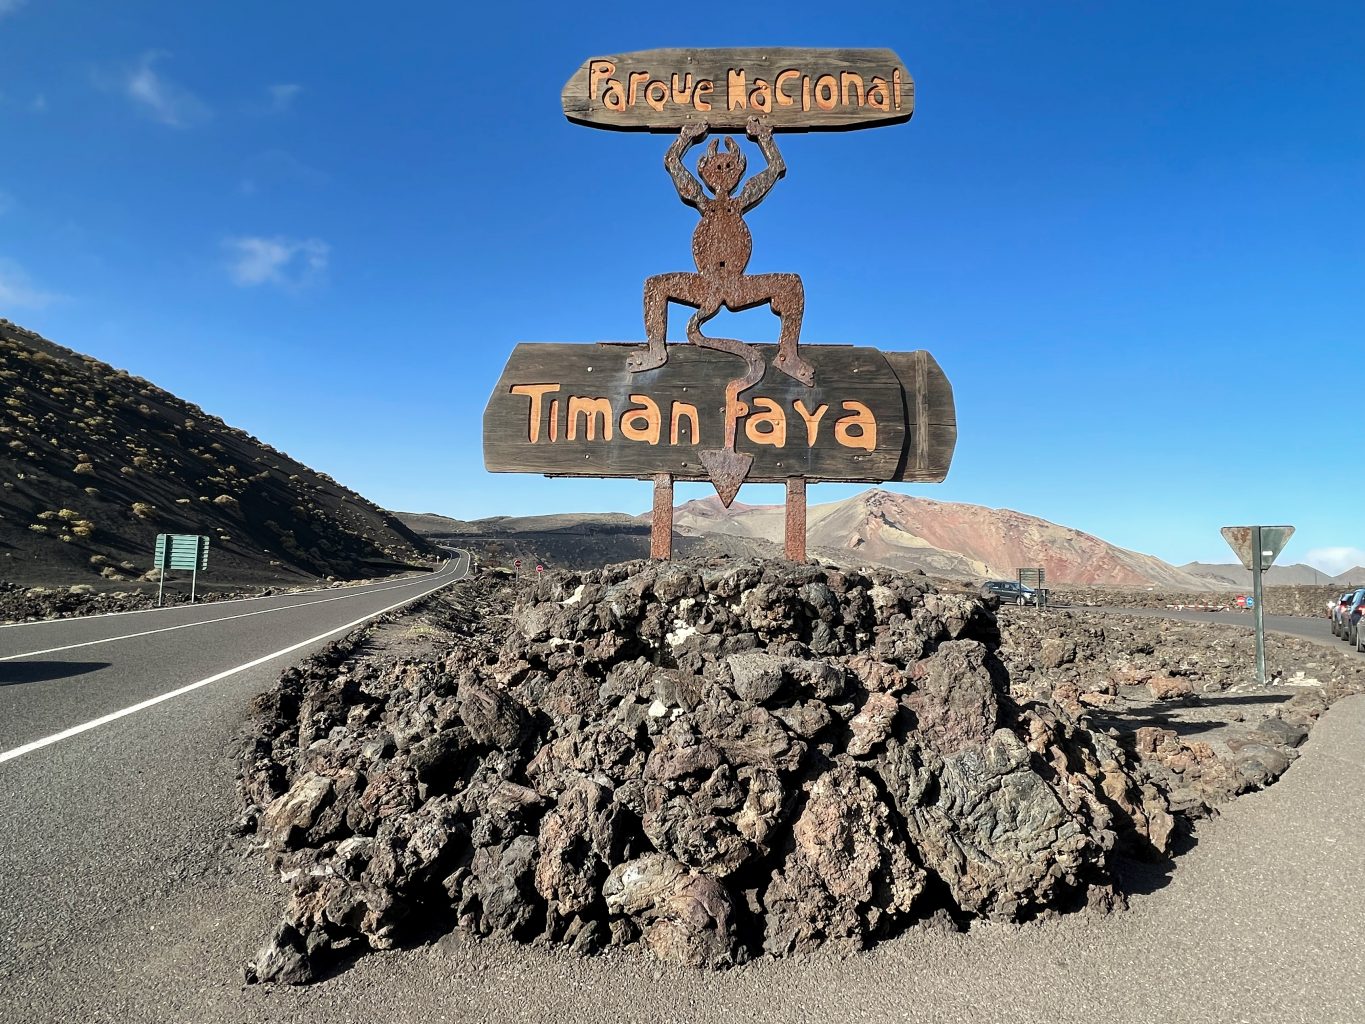 Acceso al Parque Nacional de Timanfaya. Cómo visitar el Parque Nacional de Timanfaya